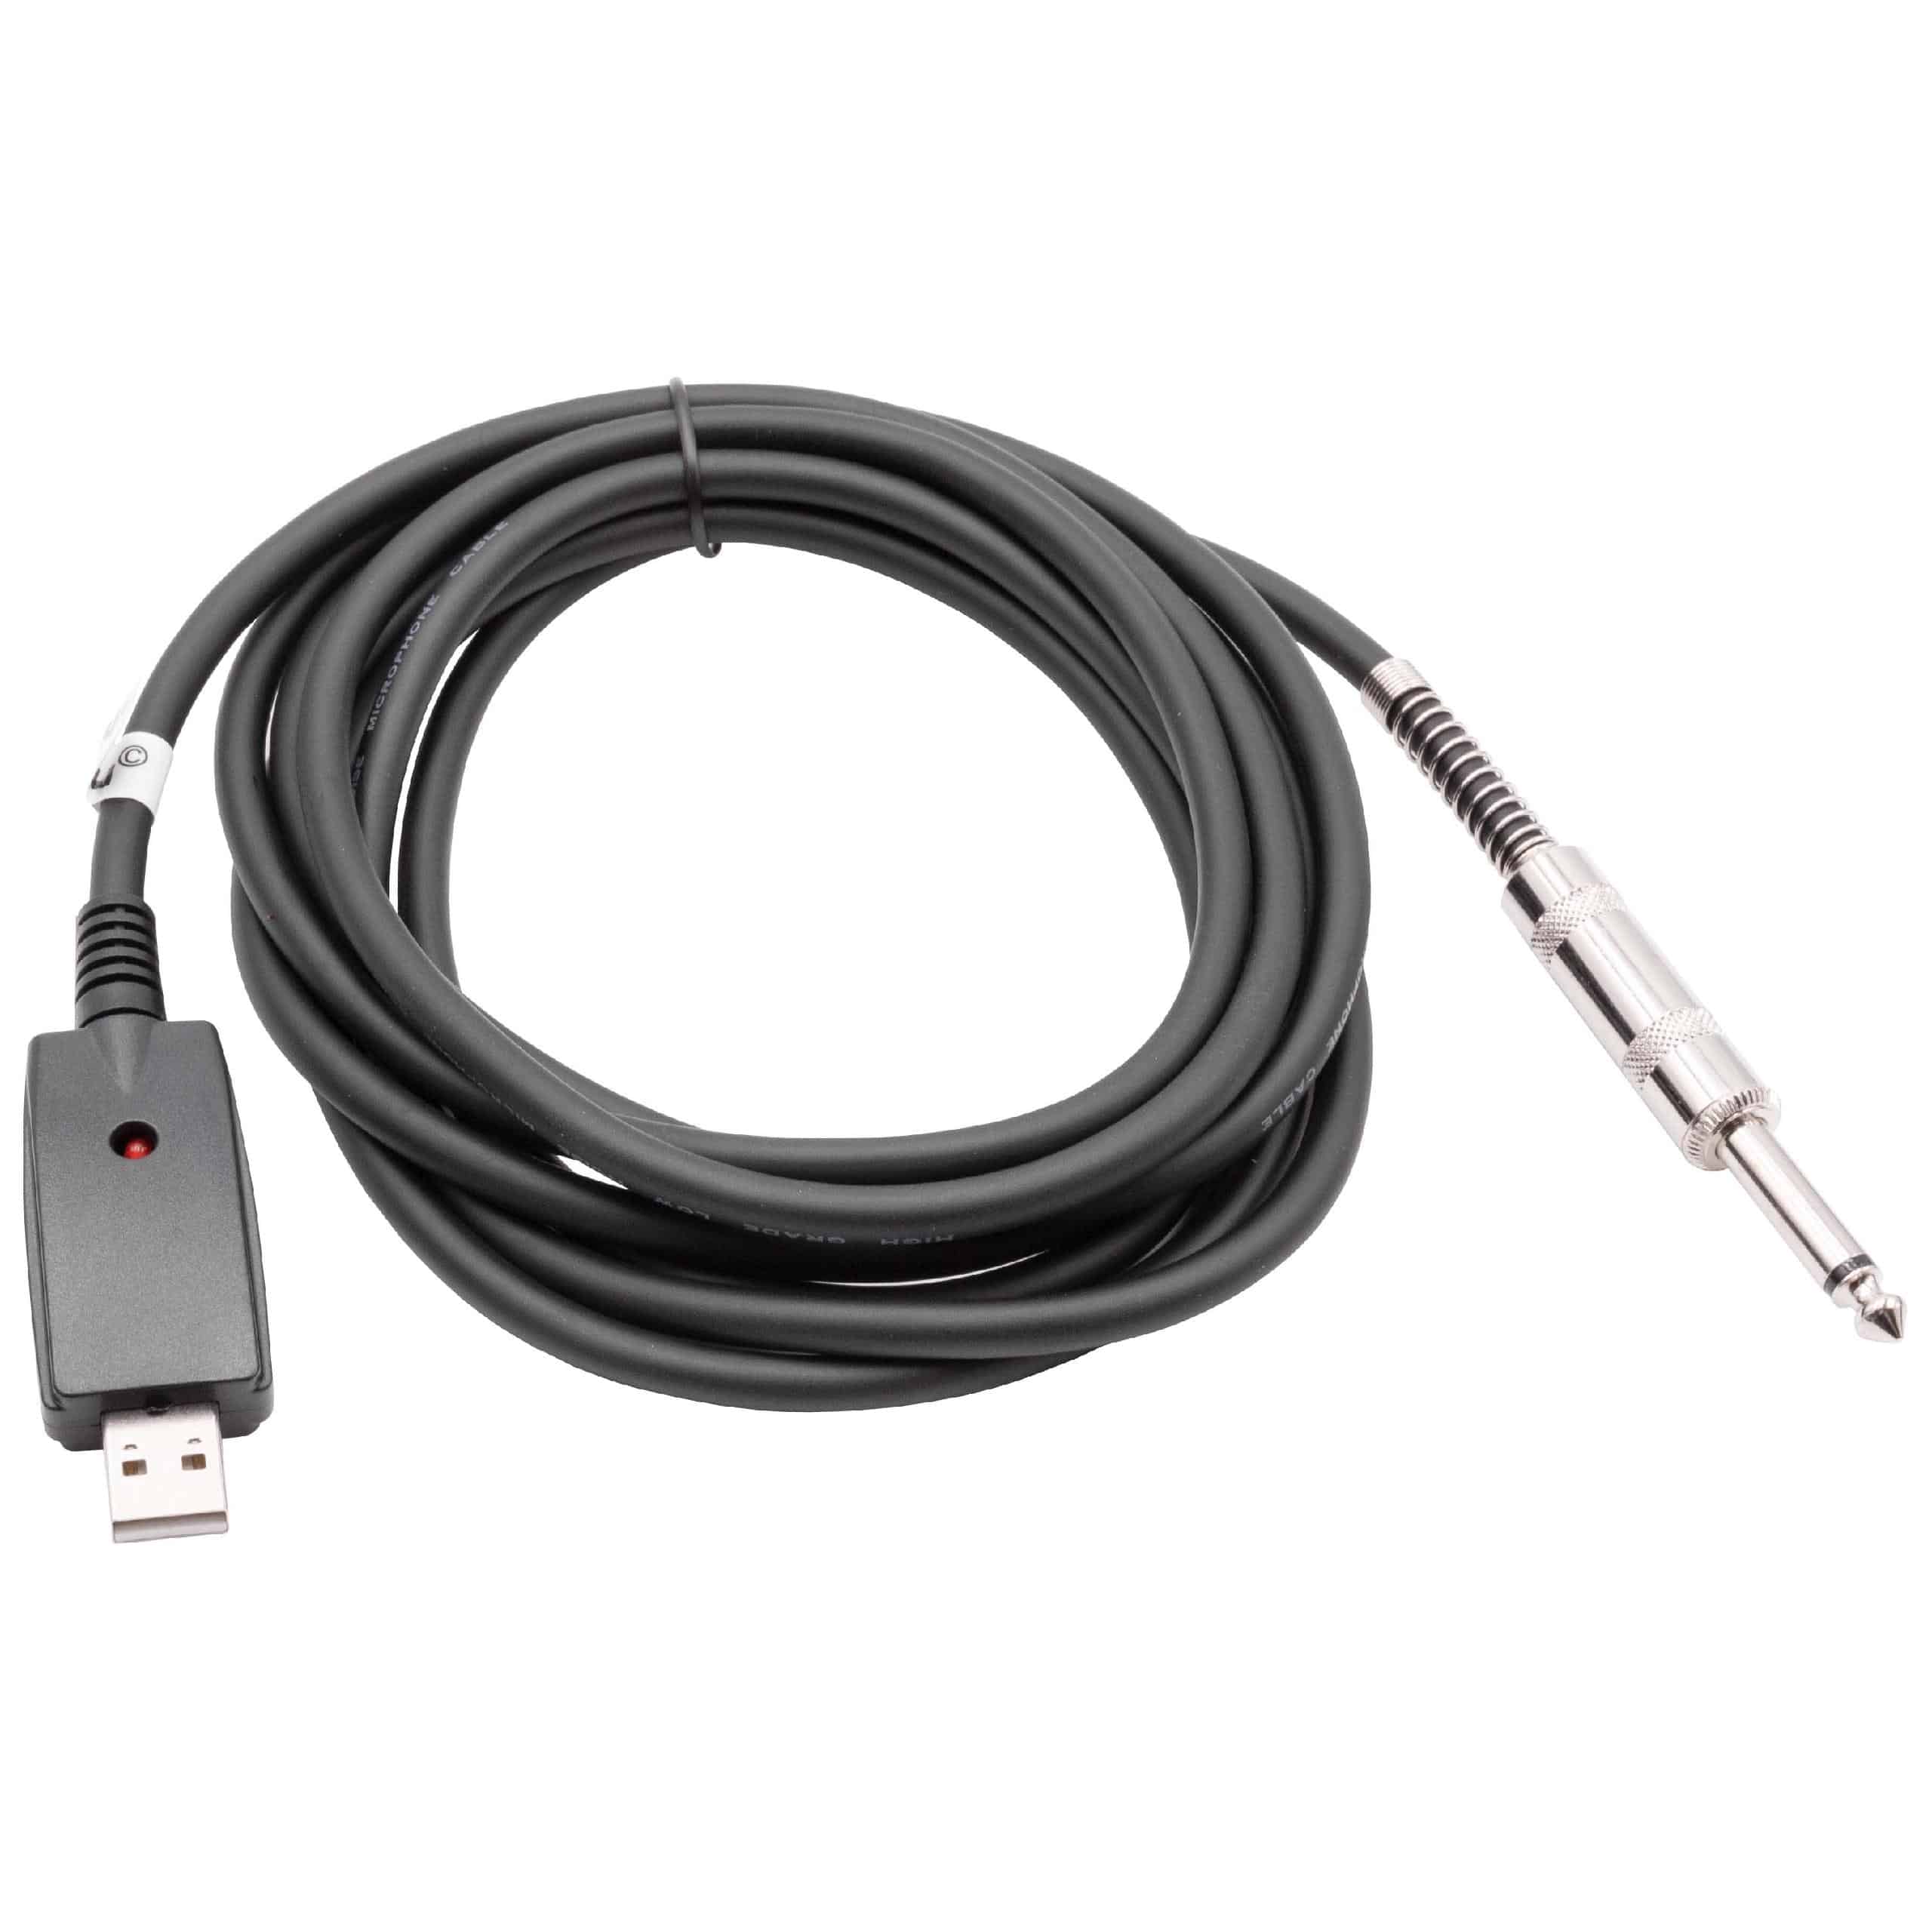 vhbw Cable adaptador USB 2.0 a clavija macho jack 6,35mm - 2,8 m Cable de audio, cable de micrófono, cable USB